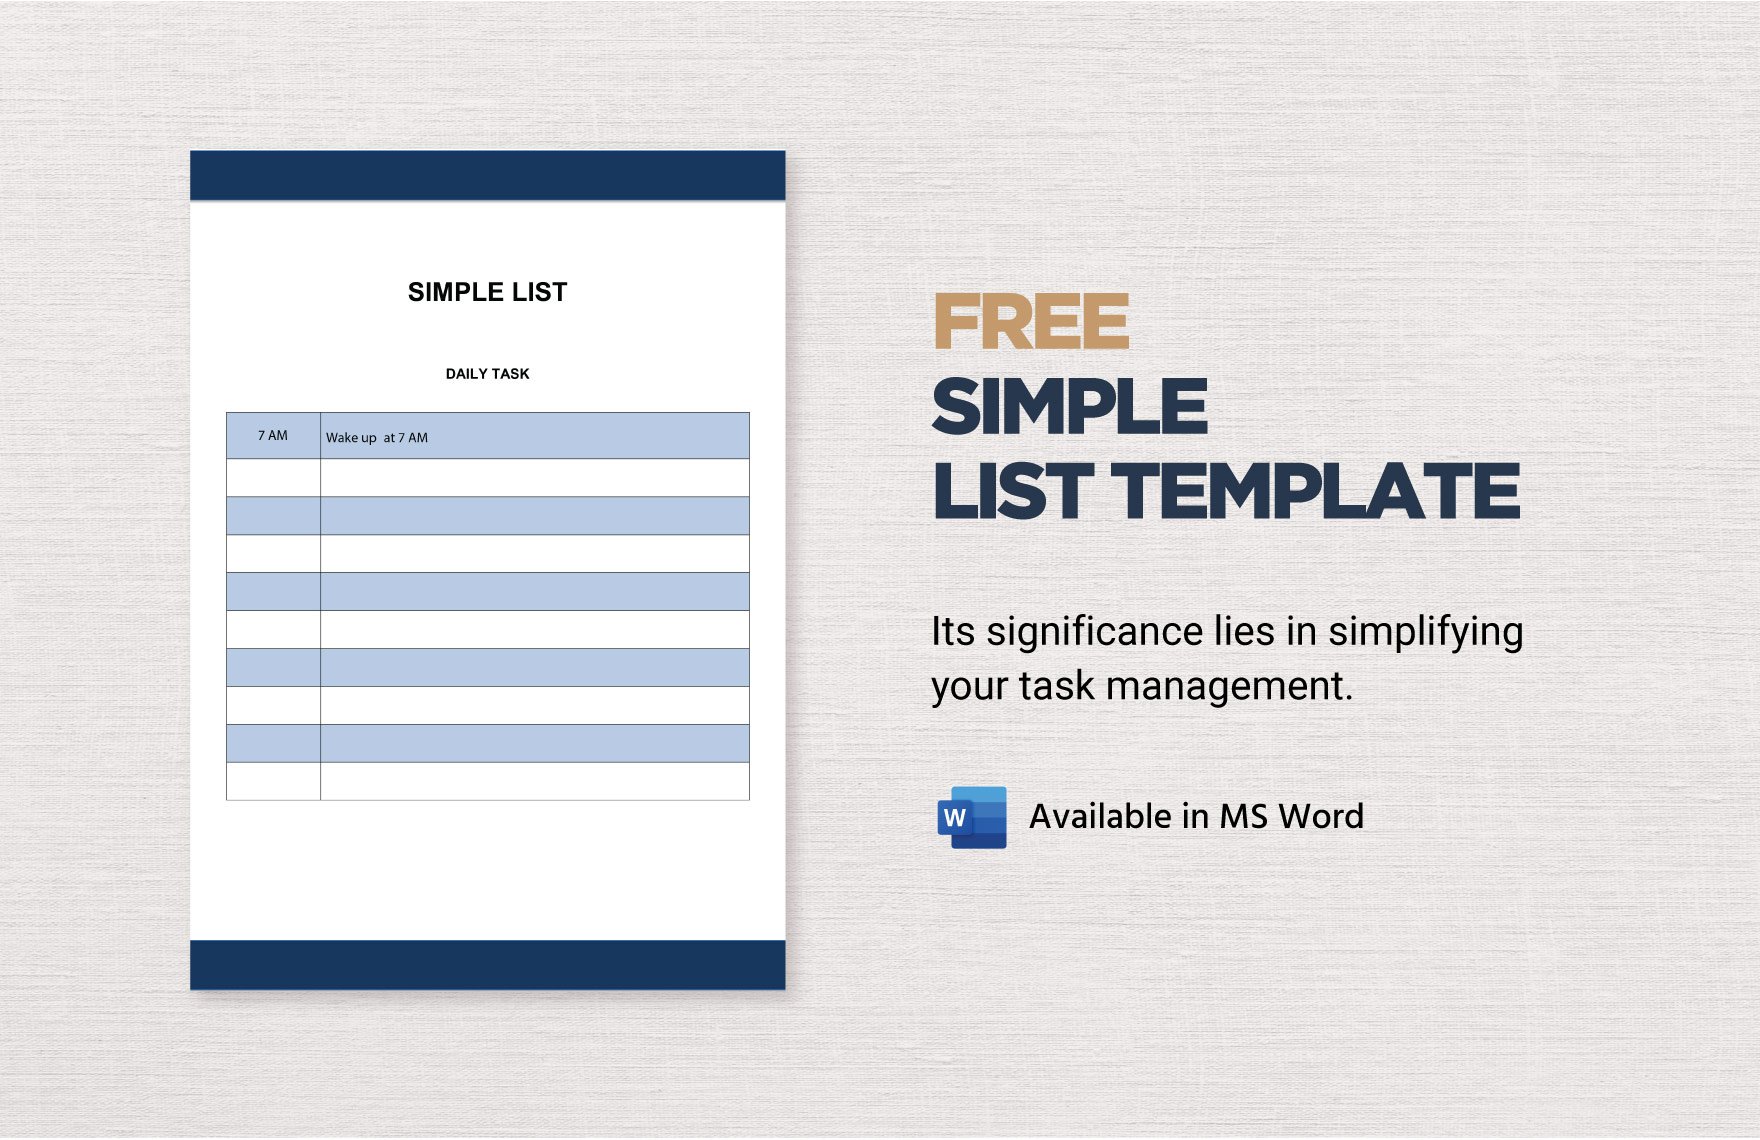 Free Simple List Template